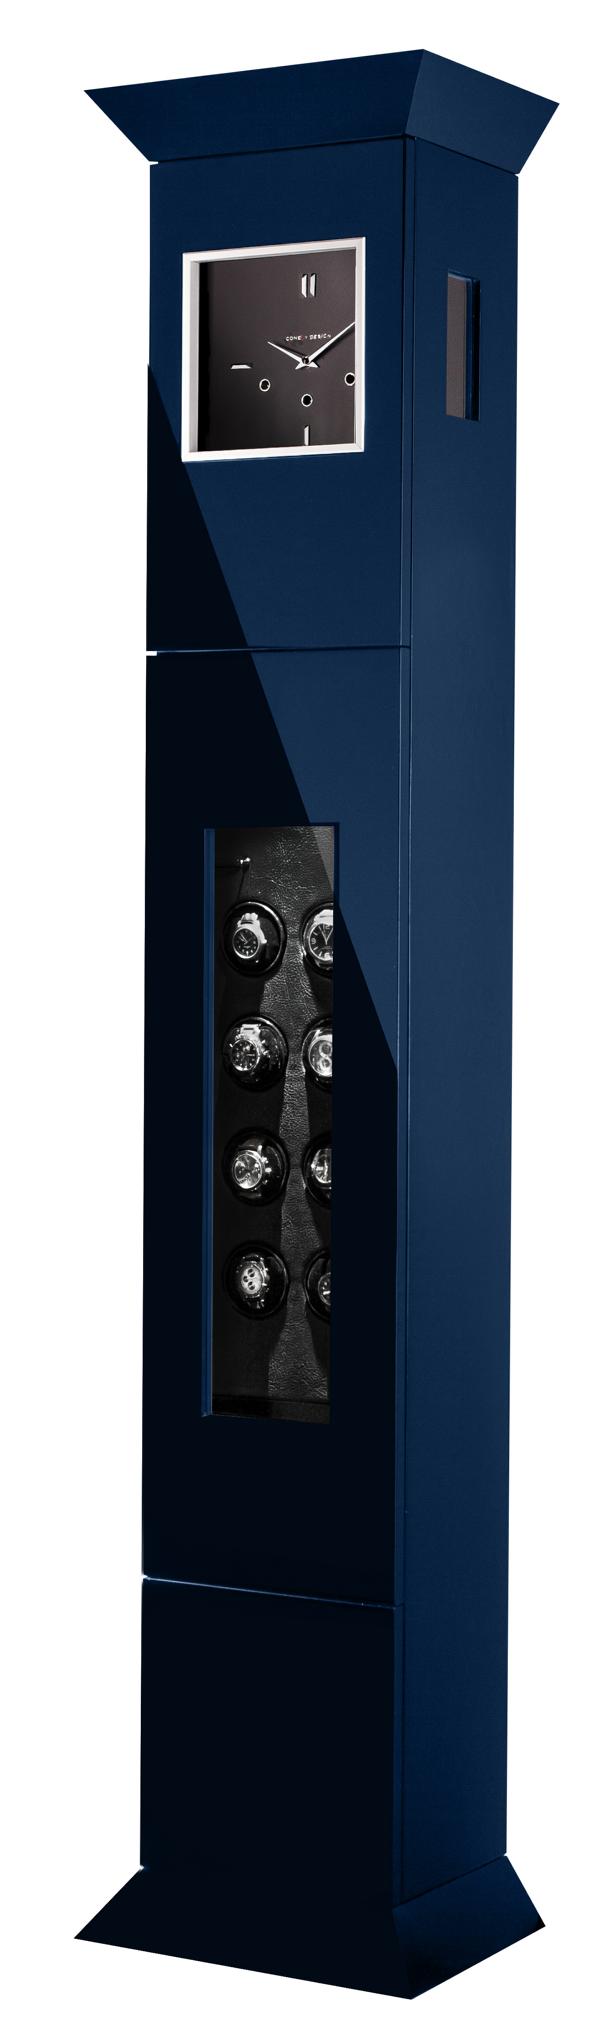 8er Uhrenbeweger Standuhr mit dunklem Zifferblatt in Blau